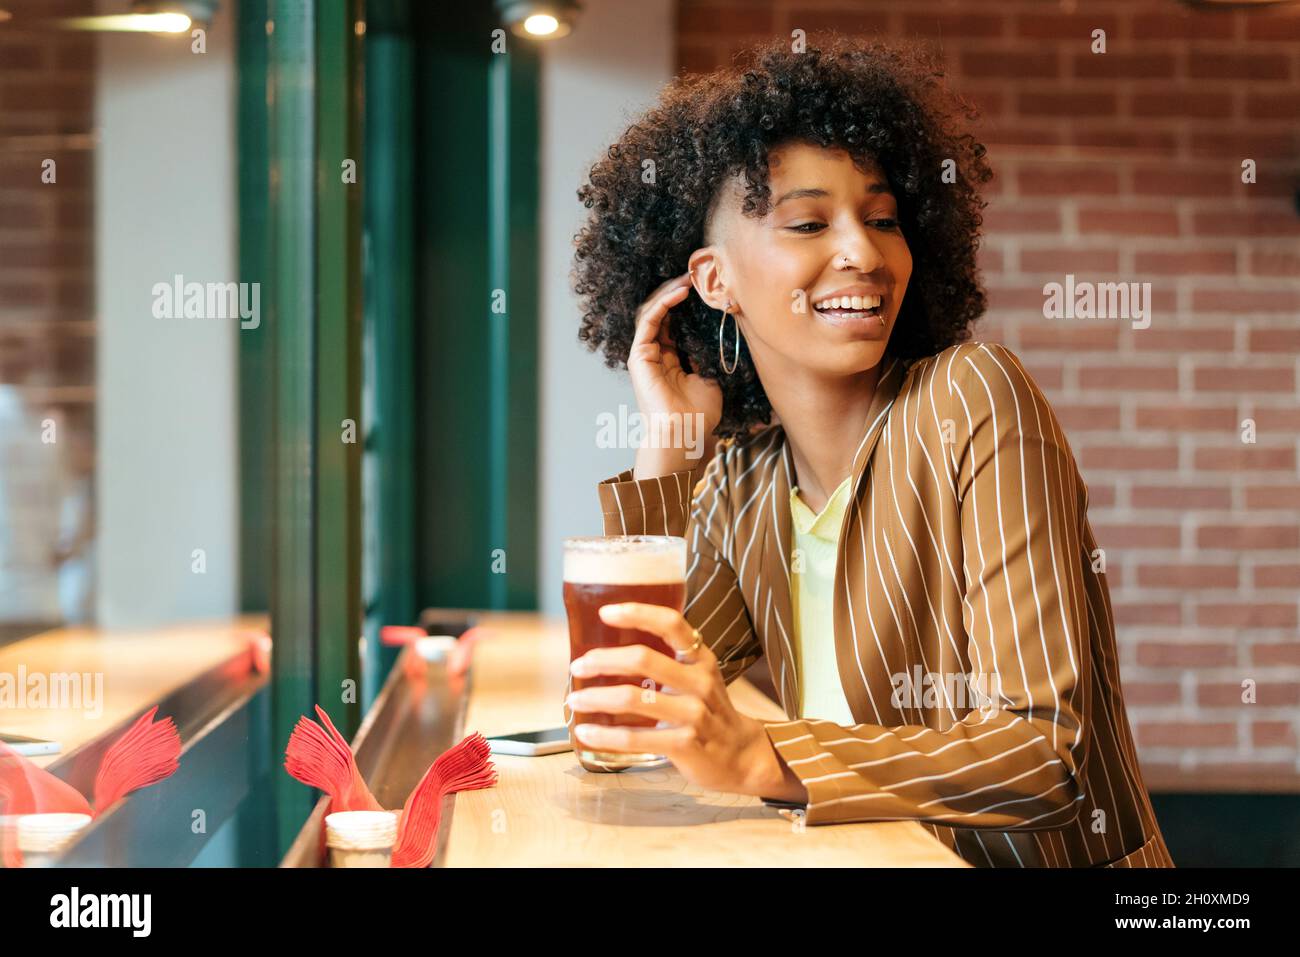 Vista laterale della giovane ragazza afro-americana allegra con eleganti capelli afro che indossano blazer a righe godendo un bicchiere di birra fredda mentre riposano al banco Foto Stock